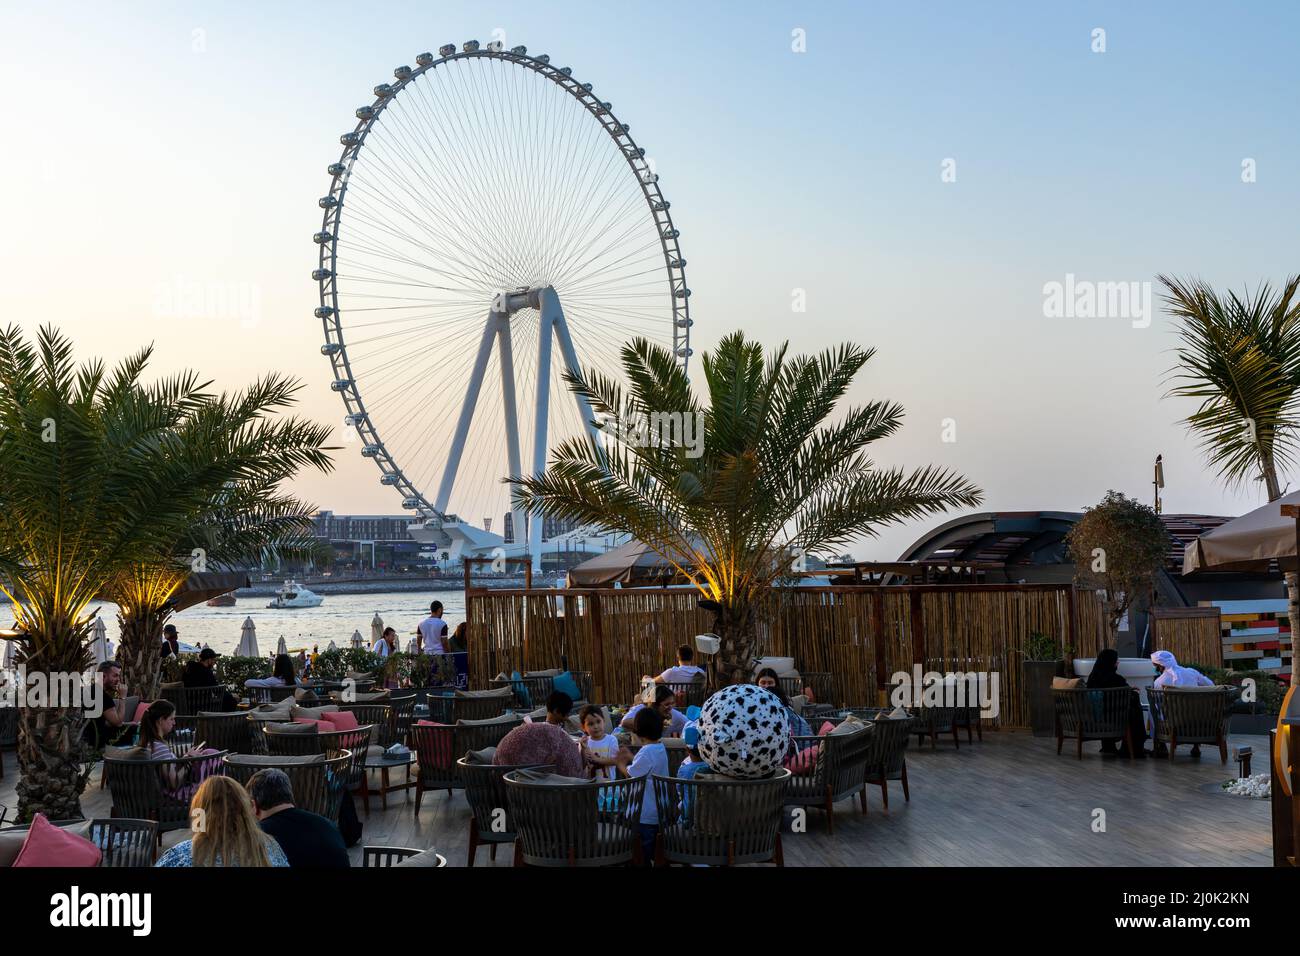 Dubai Eye ou Al Ain, Bluewaters Island. Émirats arabes Unis. Moyen-Orient. Banque D'Images